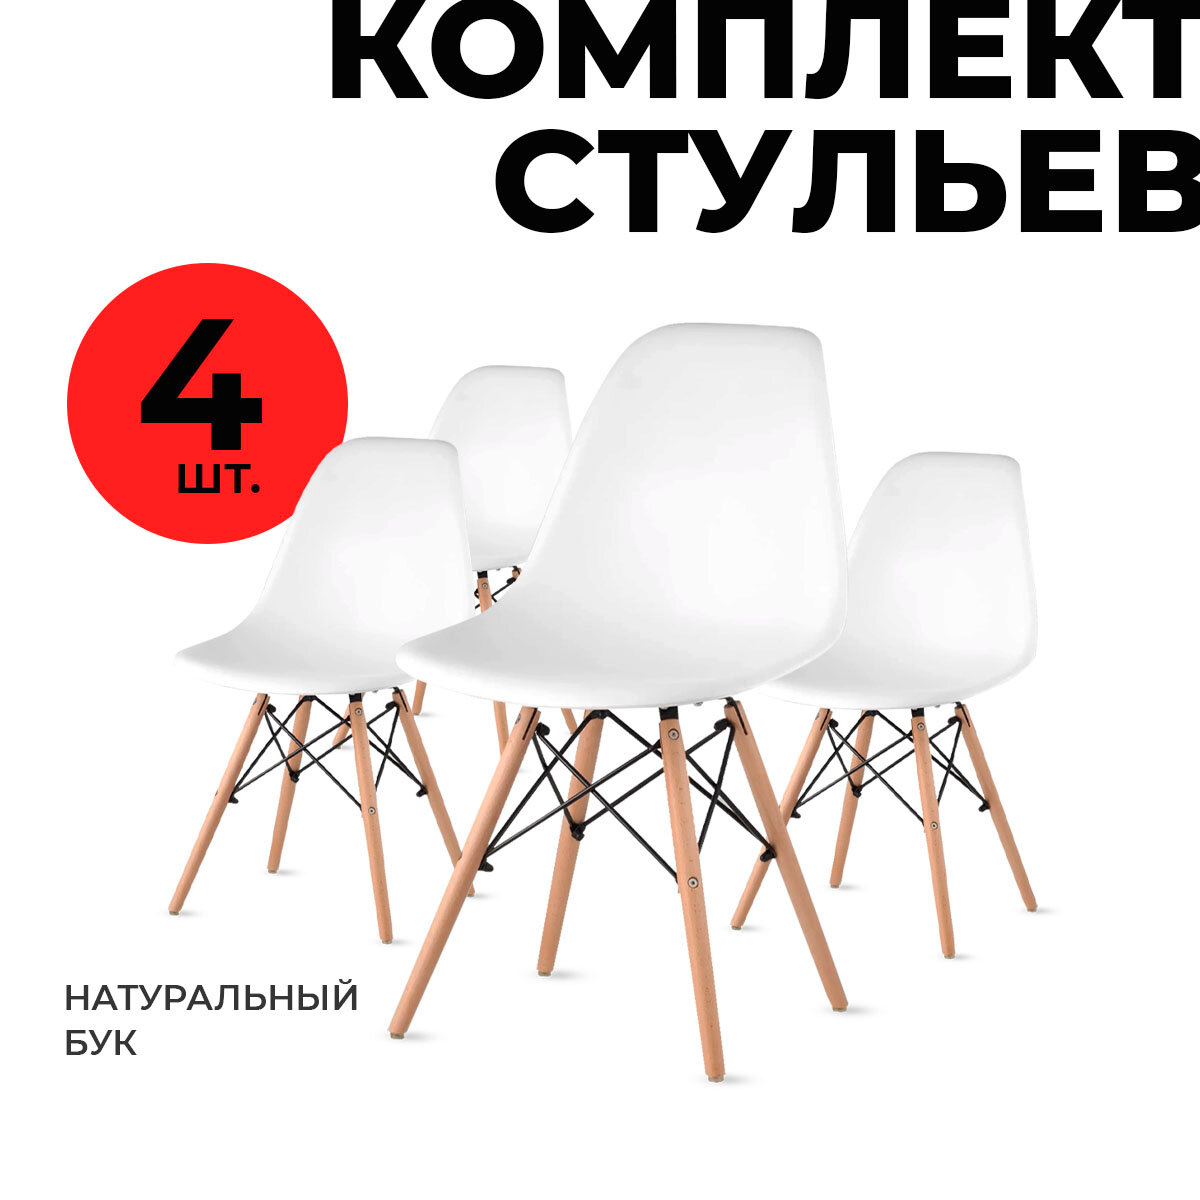 Набор стульев со спинкой LuxAlto 4 шт. со съемными чехлами бордовый